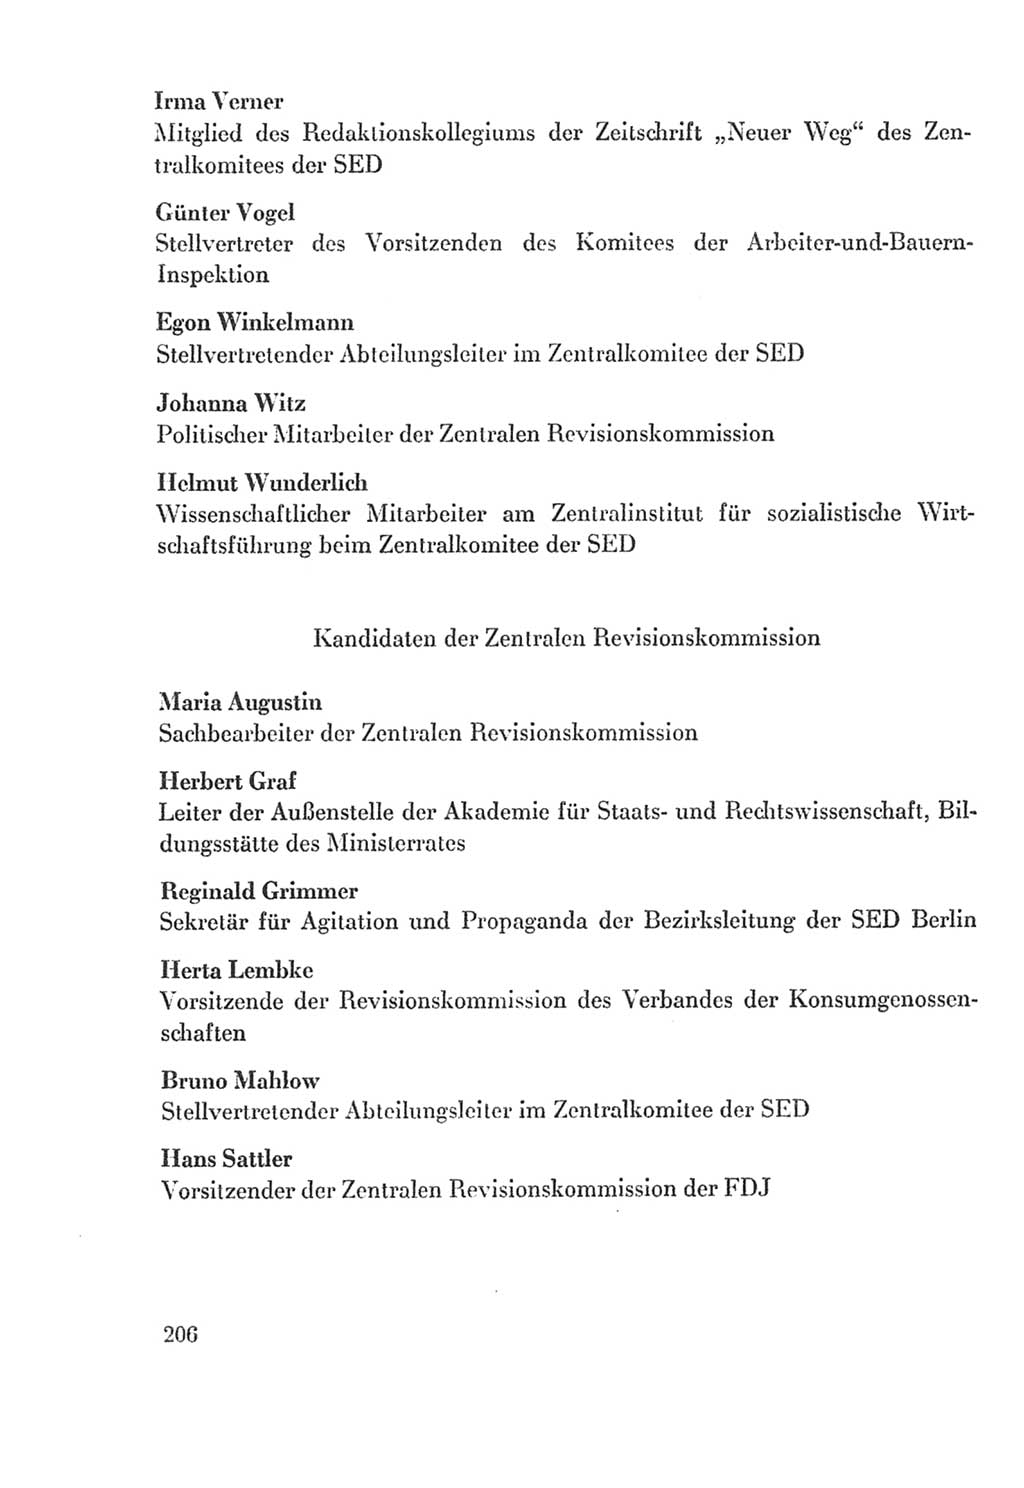 Protokoll der Verhandlungen des Ⅸ. Parteitages der Sozialistischen Einheitspartei Deutschlands (SED) [Deutsche Demokratische Republik (DDR)] 1976, Band 2, Seite 206 (Prot. Verh. Ⅸ. PT SED DDR 1976, Bd. 2, S. 206)